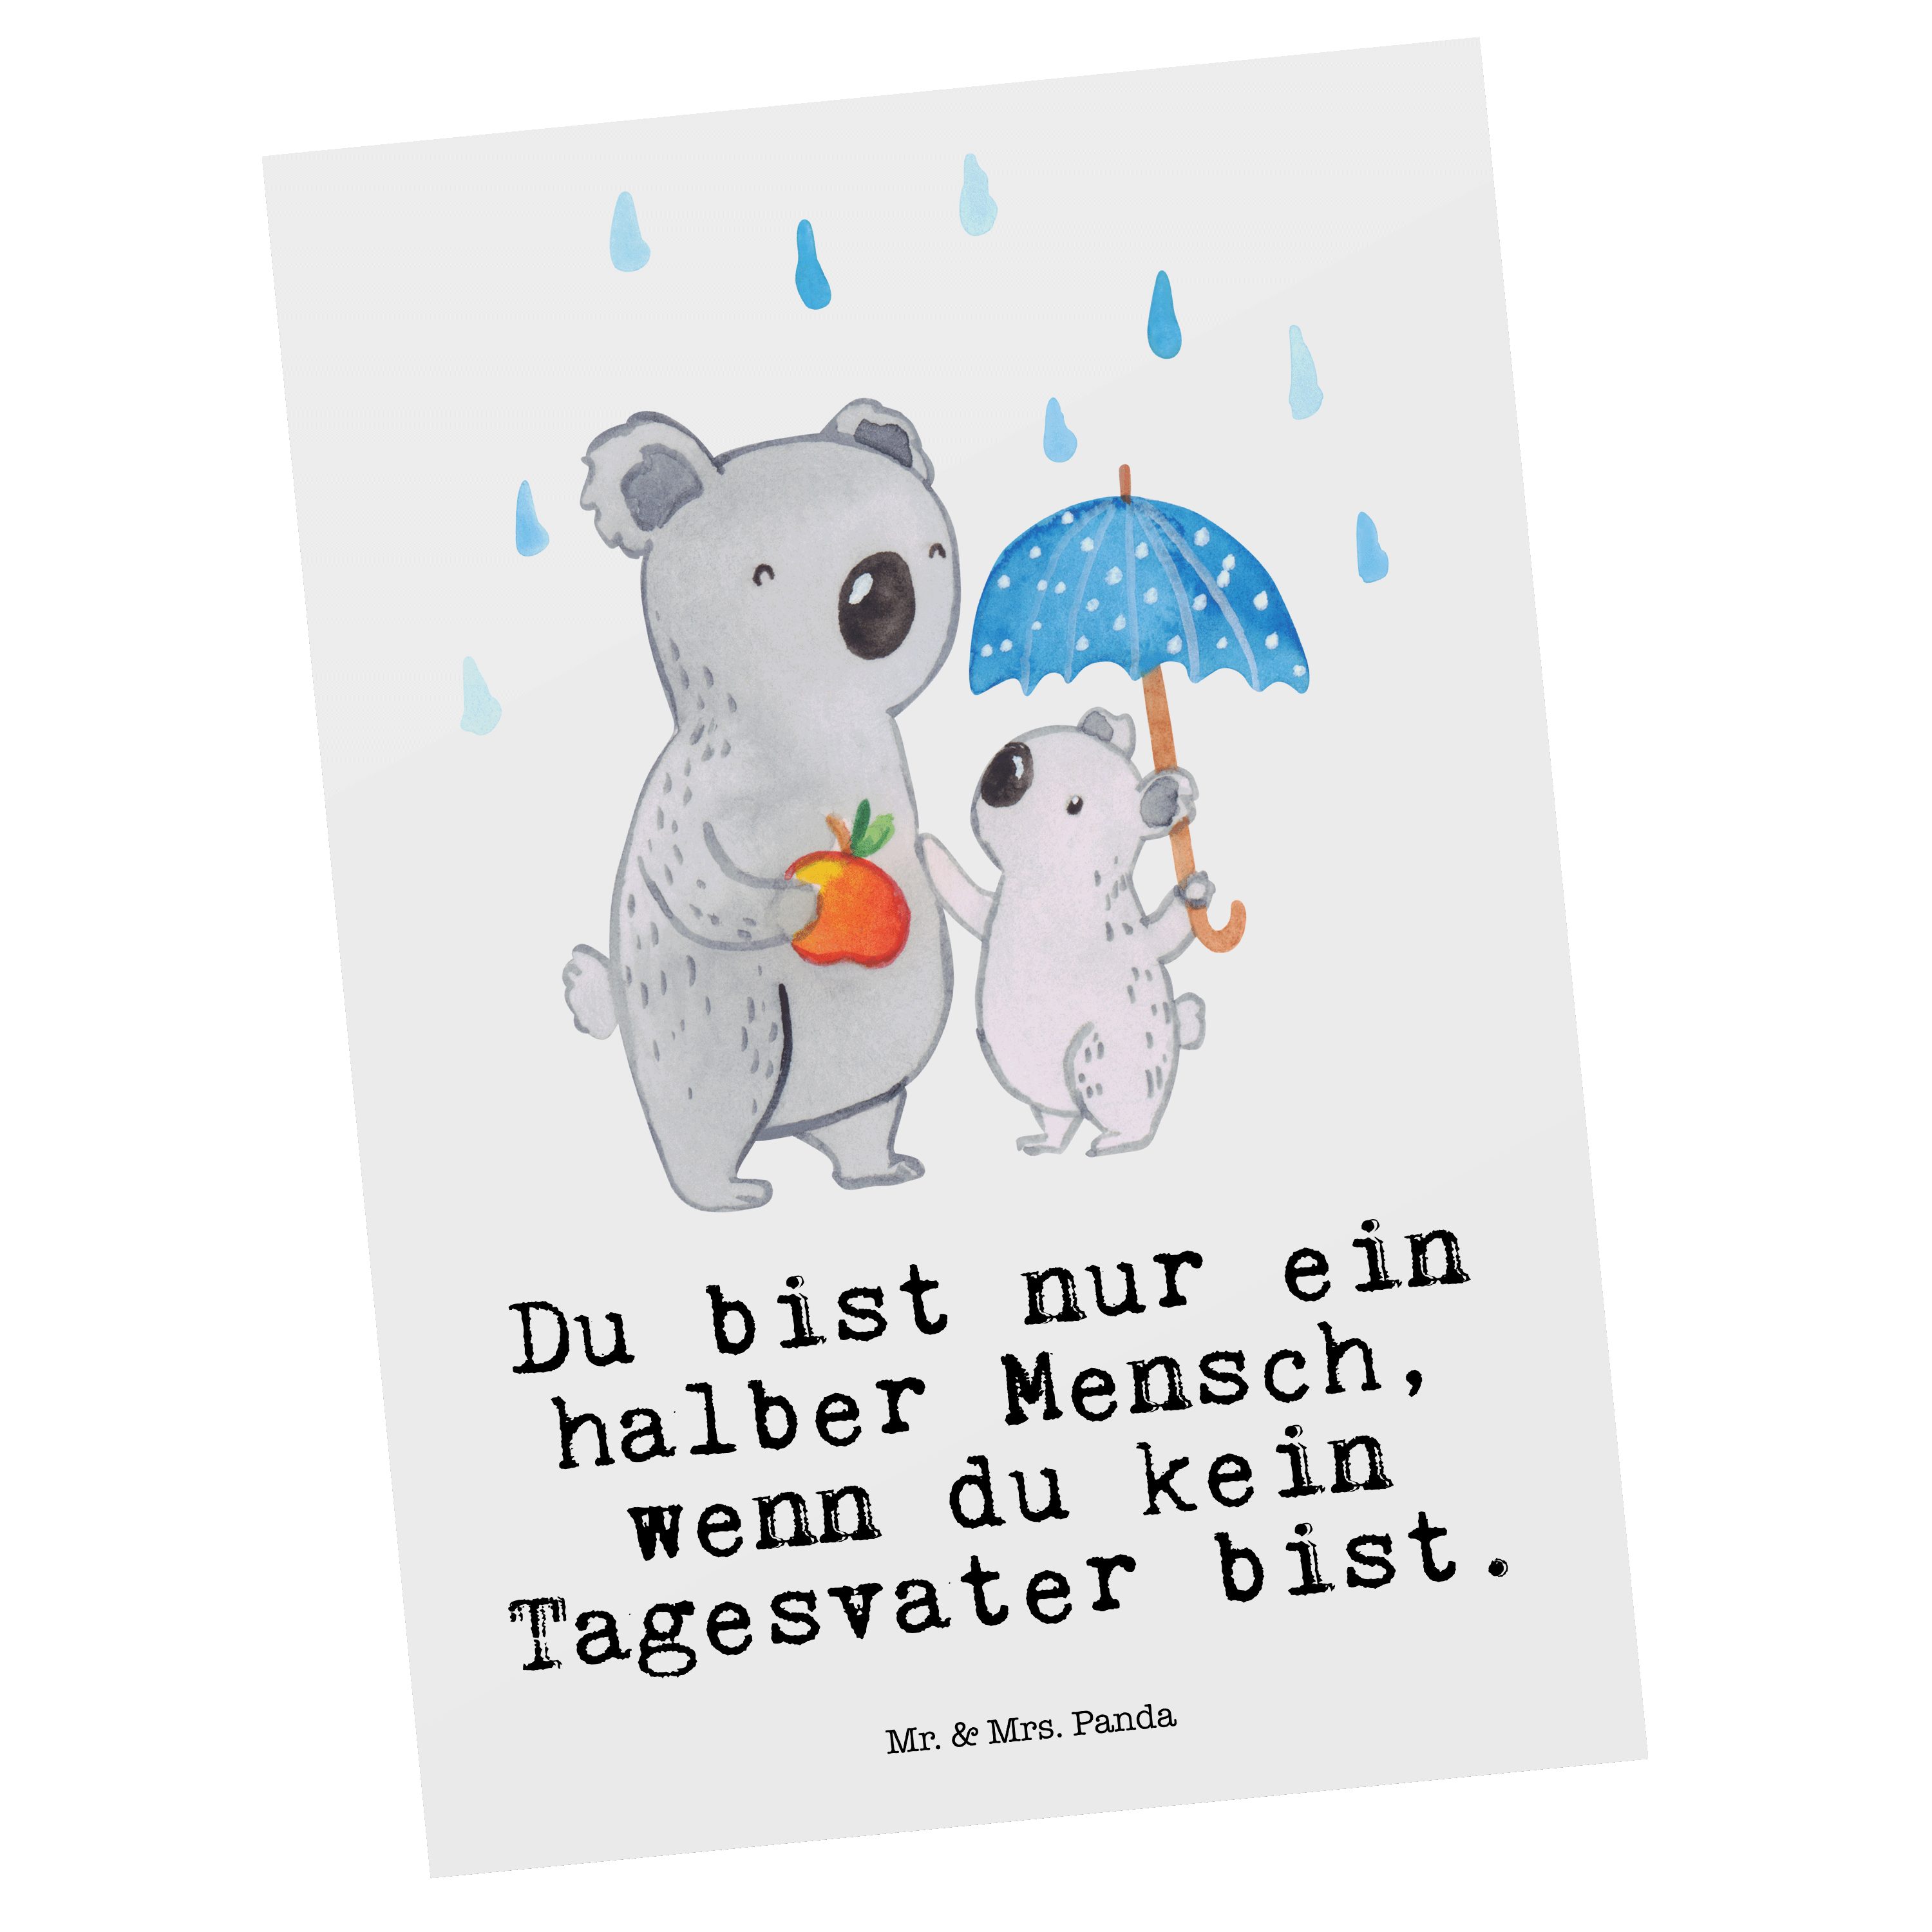 Mr. & Mrs. Panda Postkarte Tagesvater mit Herz - Weiß - Geschenk, Dankeskarte, Einladung, Jubilä